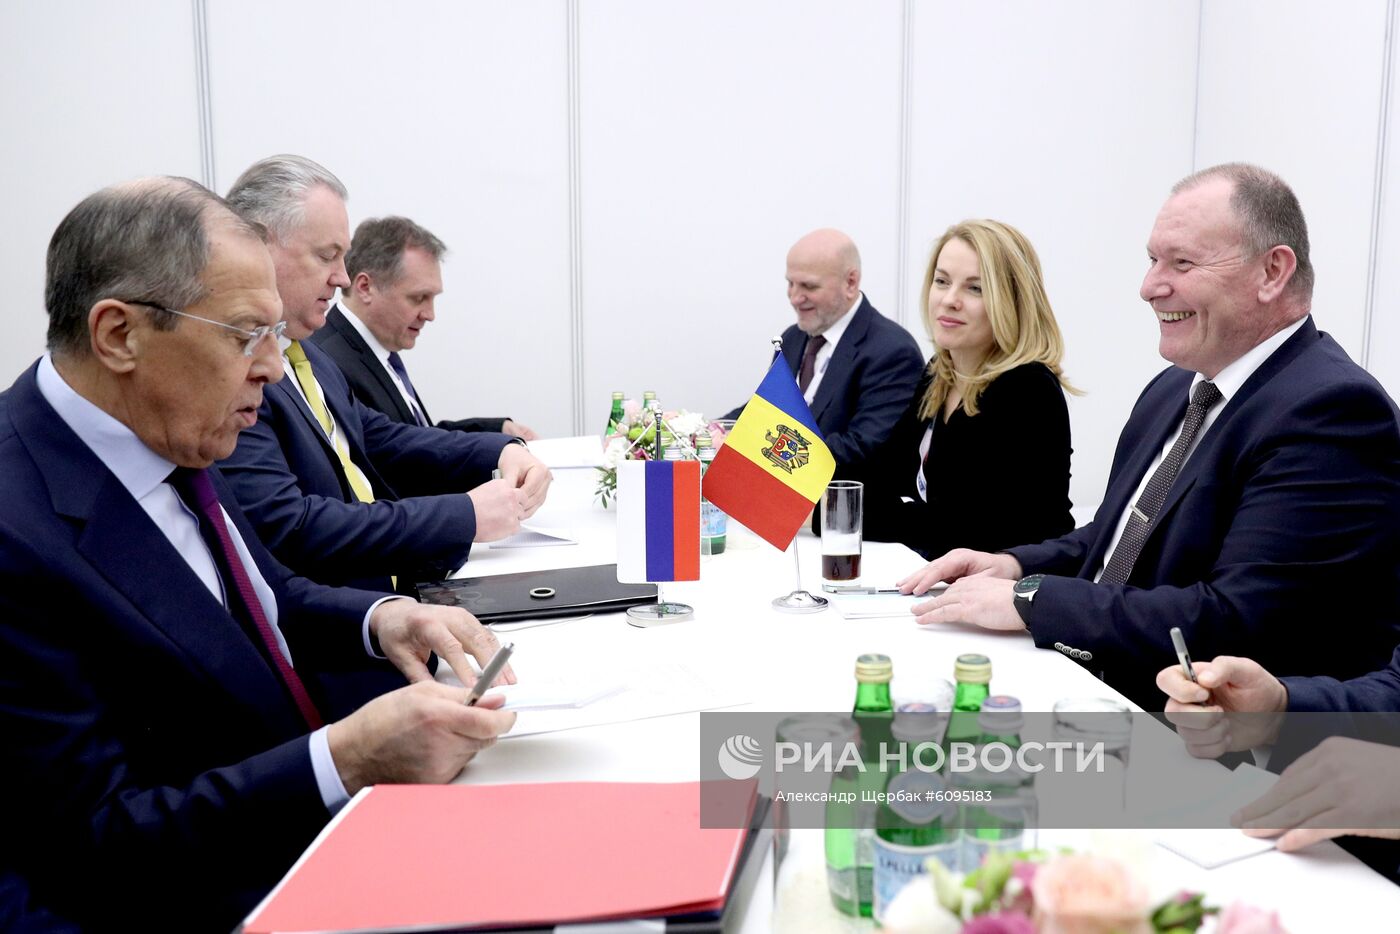 Совет министров иностранных дел ОБСЕ в Братиславе